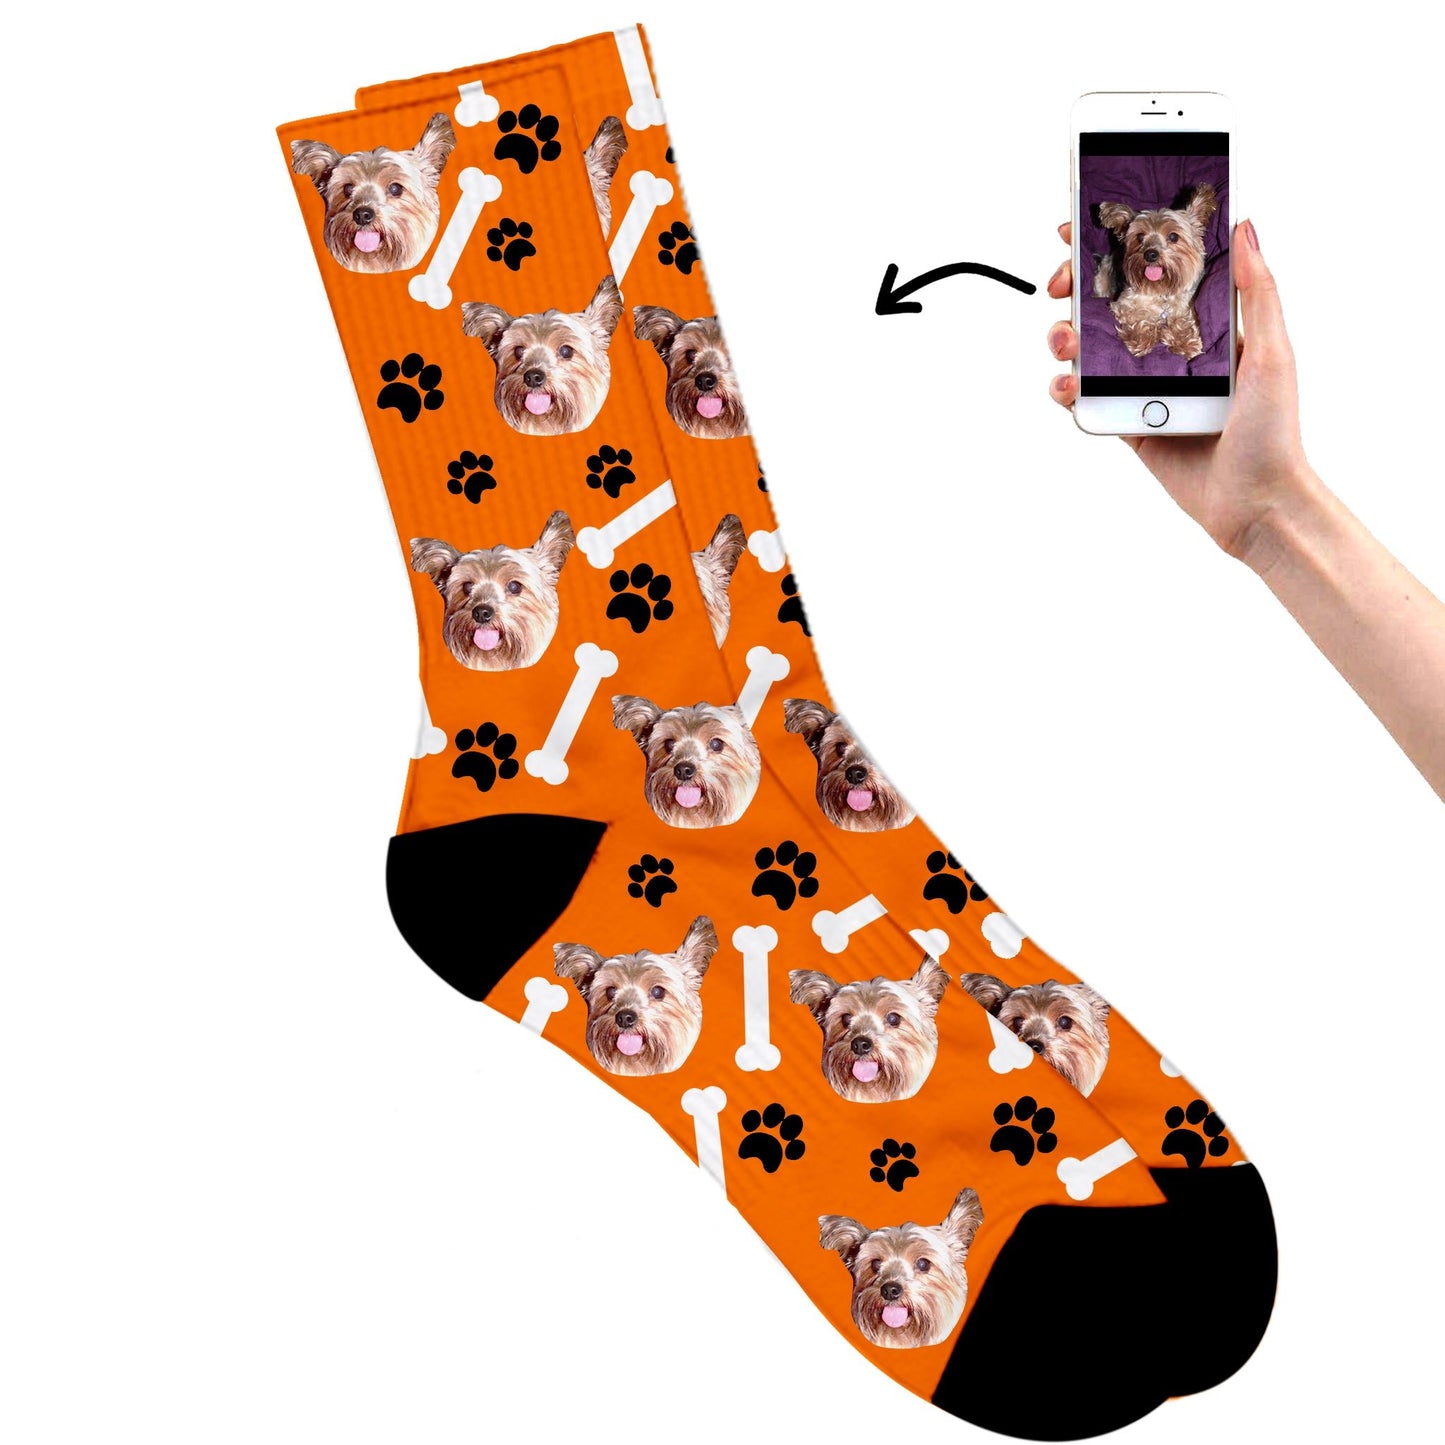 
                  
                    Dog On Socks
                  
                